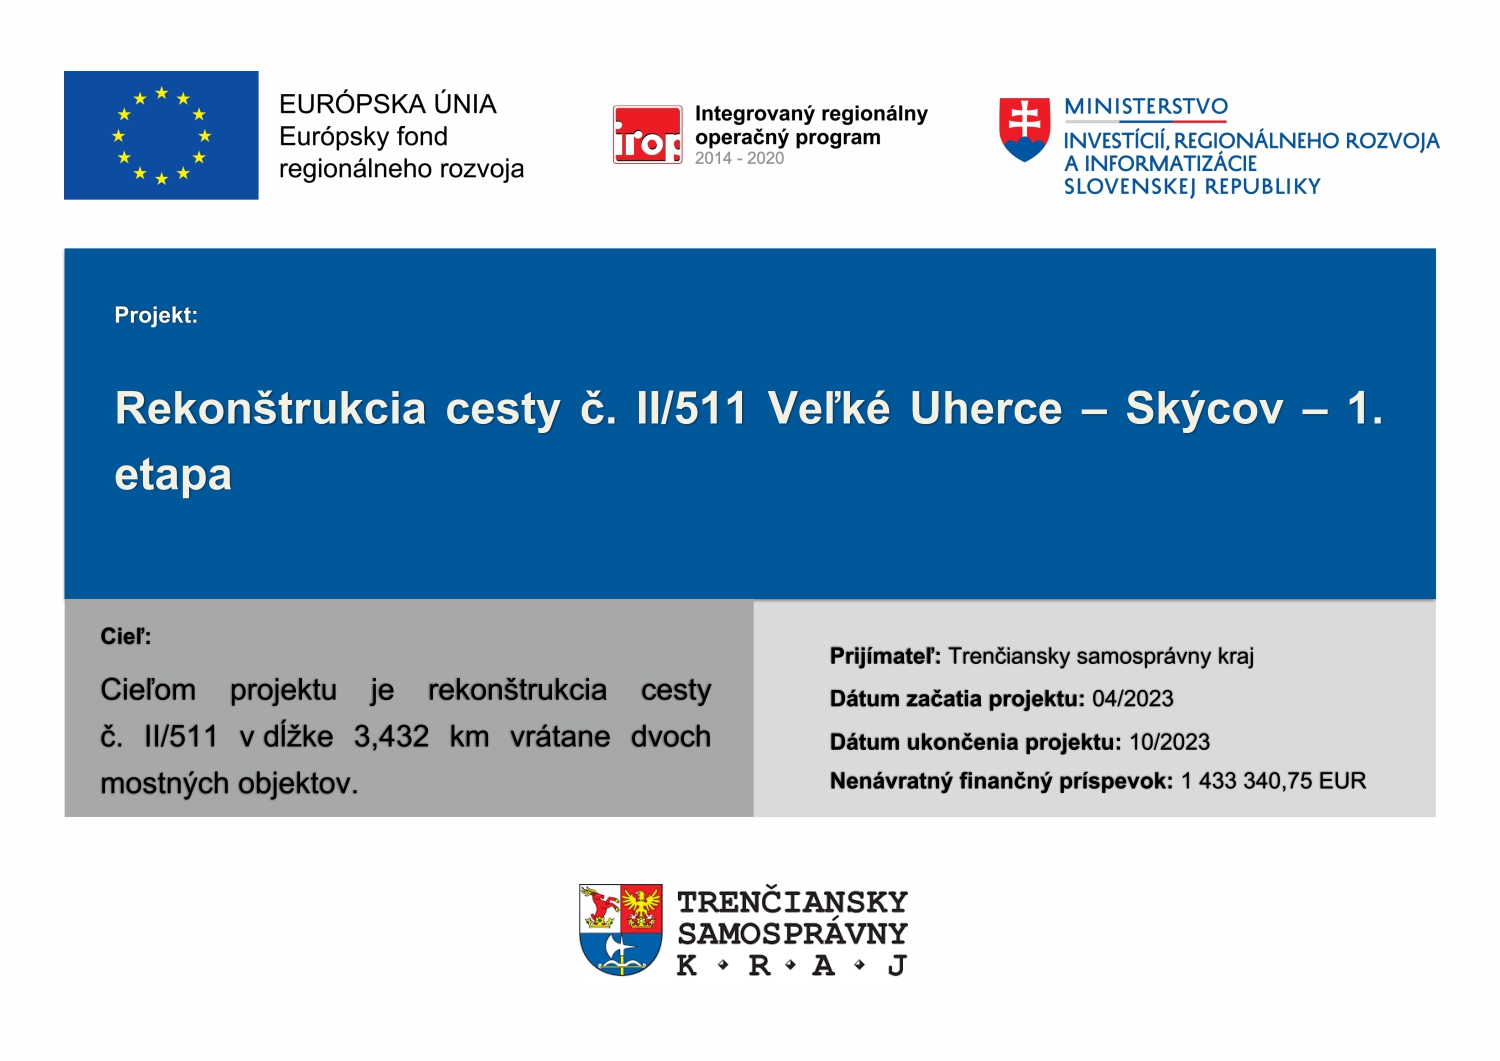 Rekonštrukcia cesty č. II/511 Veľké Uherce - Skýcov - 1. etapa